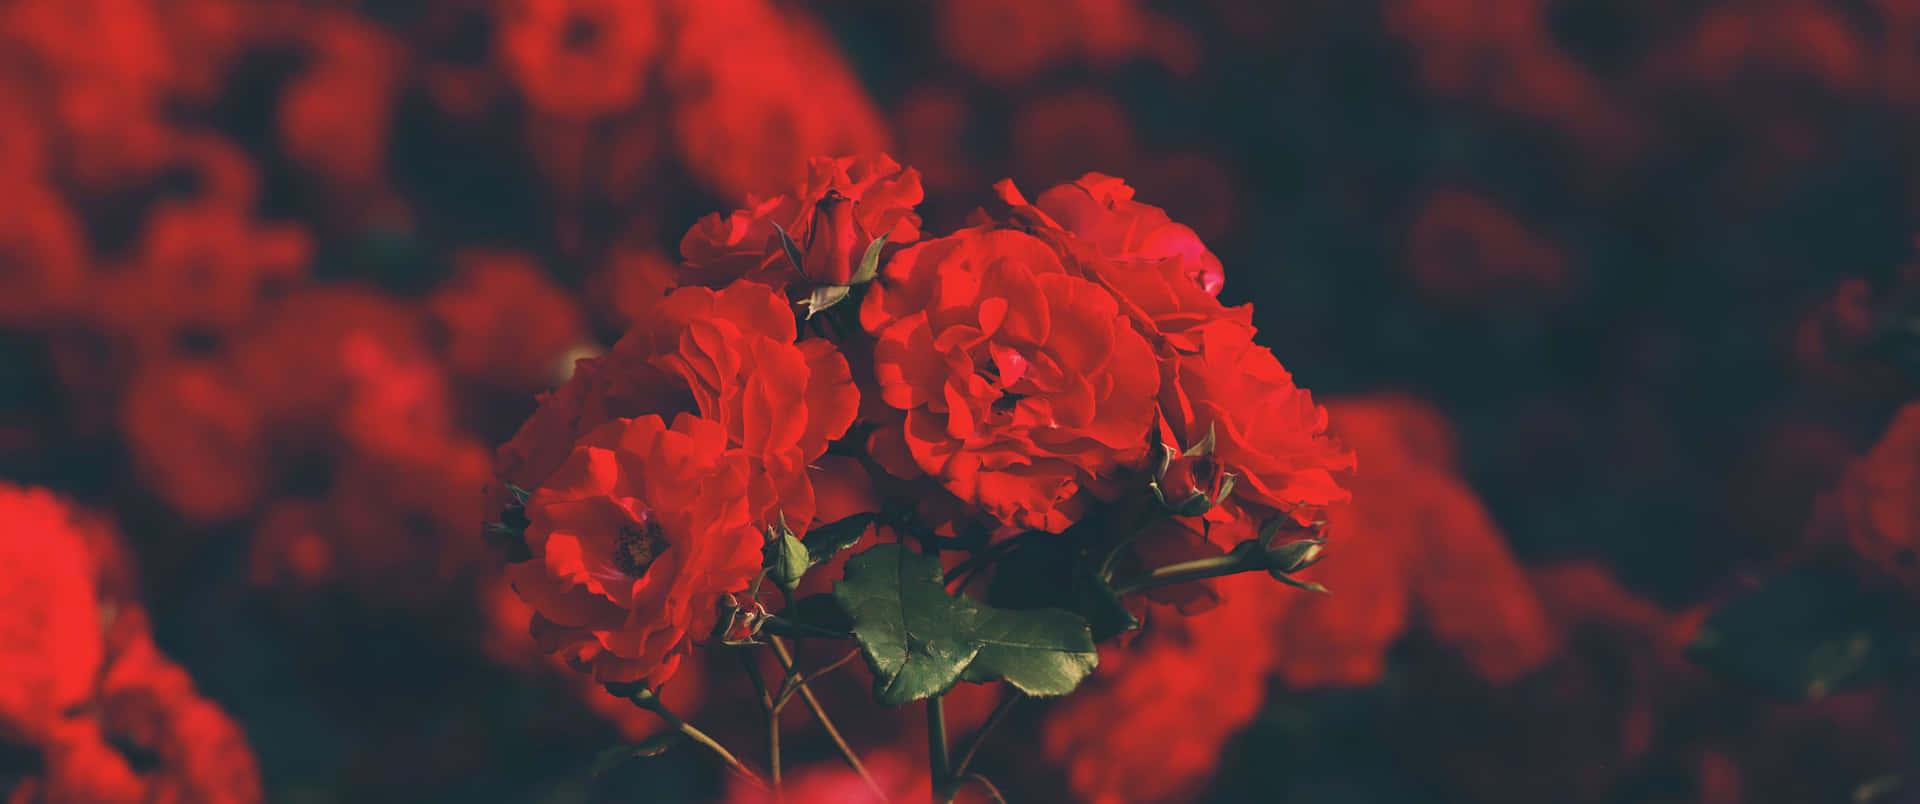 Umaabundância De Rosas Vermelhas Em Alta Definição Ultra Wide. Papel de Parede